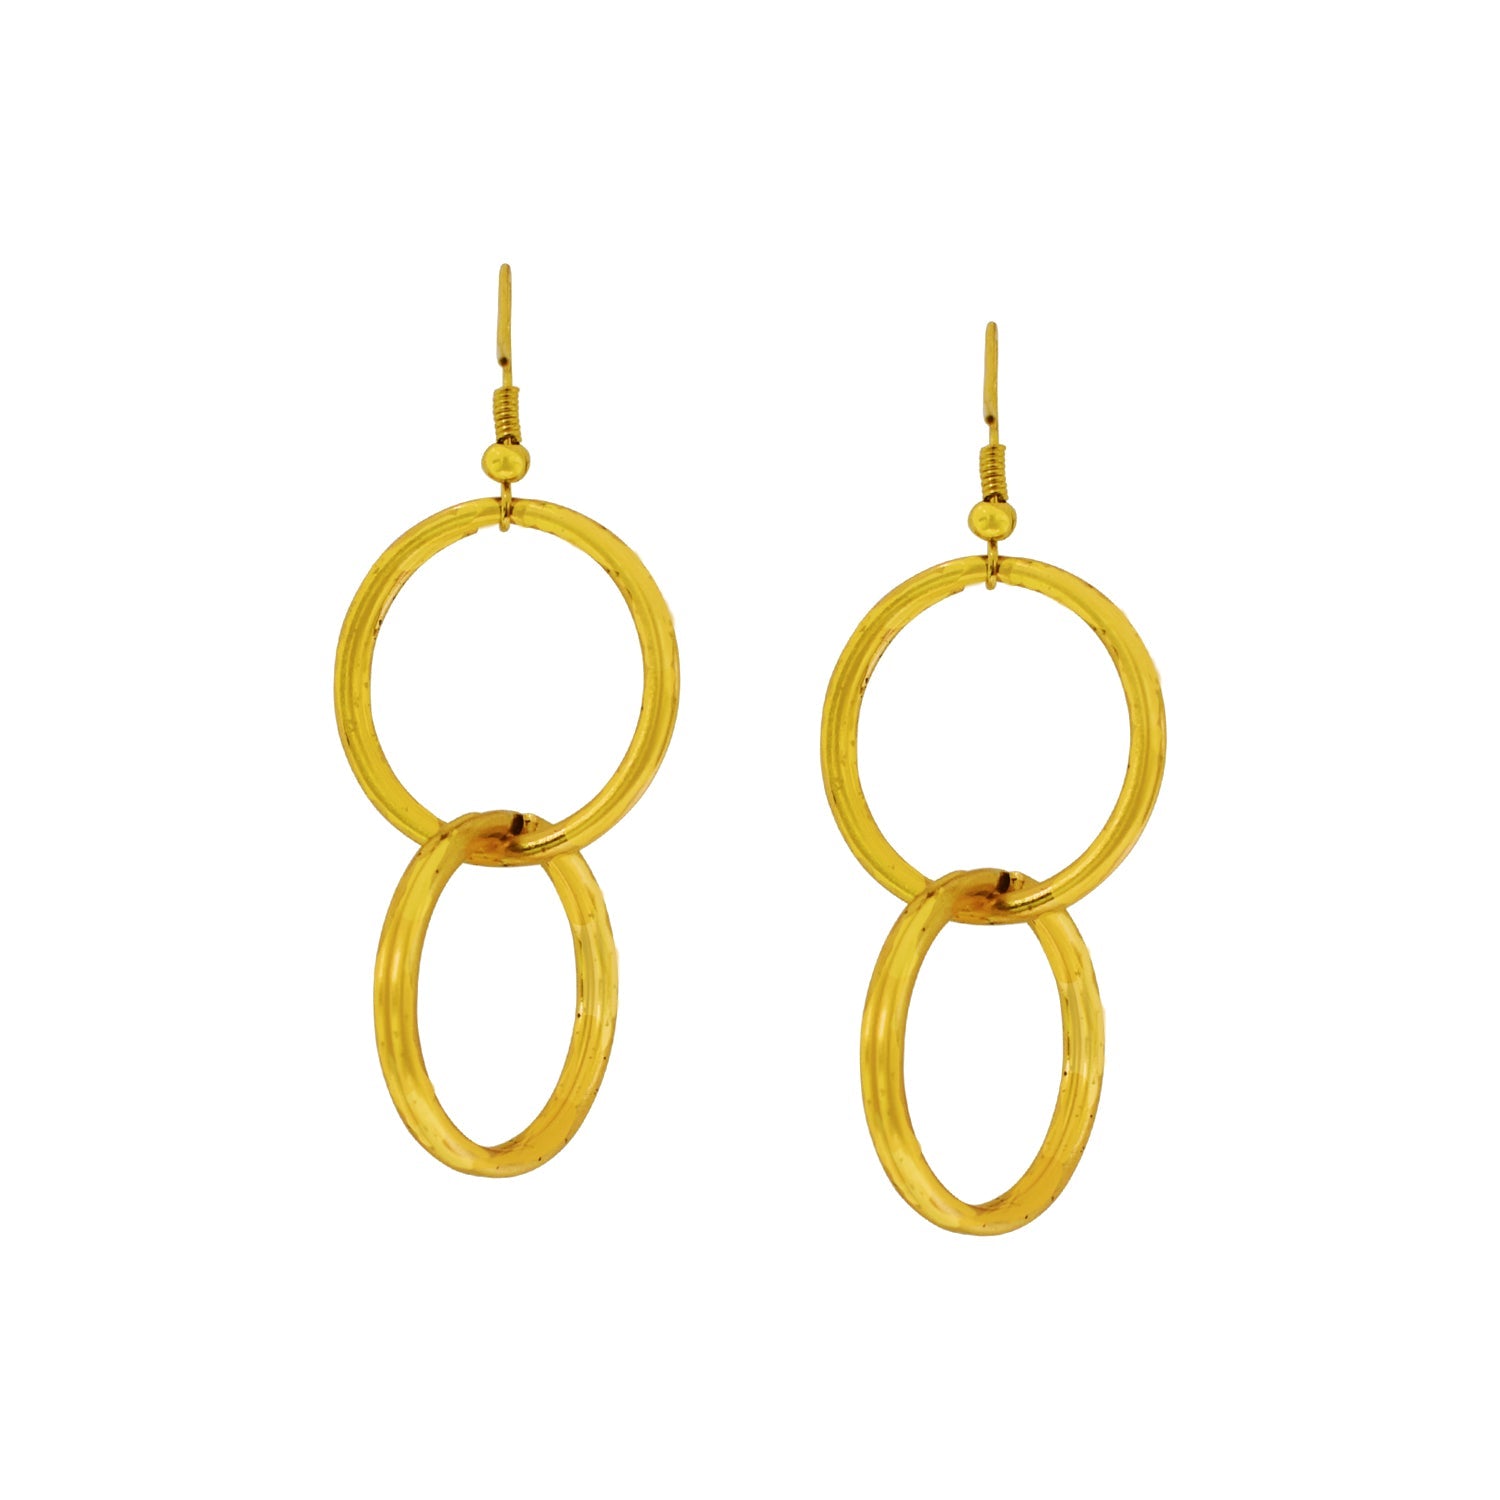 Minimalist Double Loop Earrings, Contemporary Geometric Jewelry | by lovedbynlanla-2